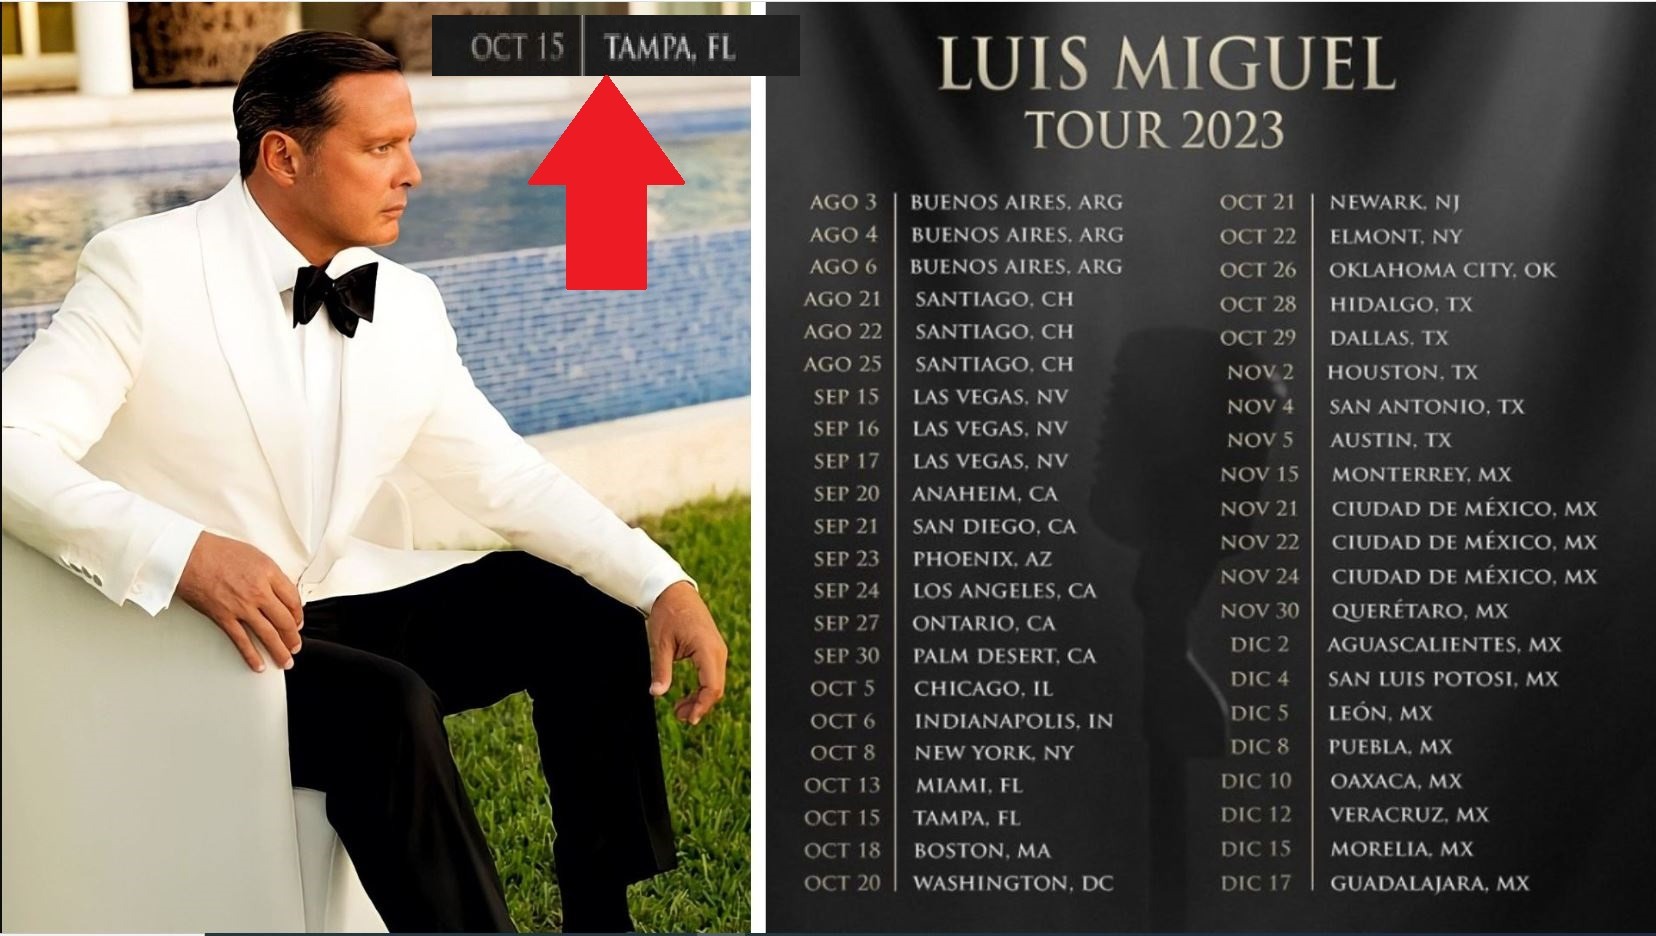 Luis Miguel tenía programado un concierto en Tampa, Florida el 15 de octubre / Foto: Instagram